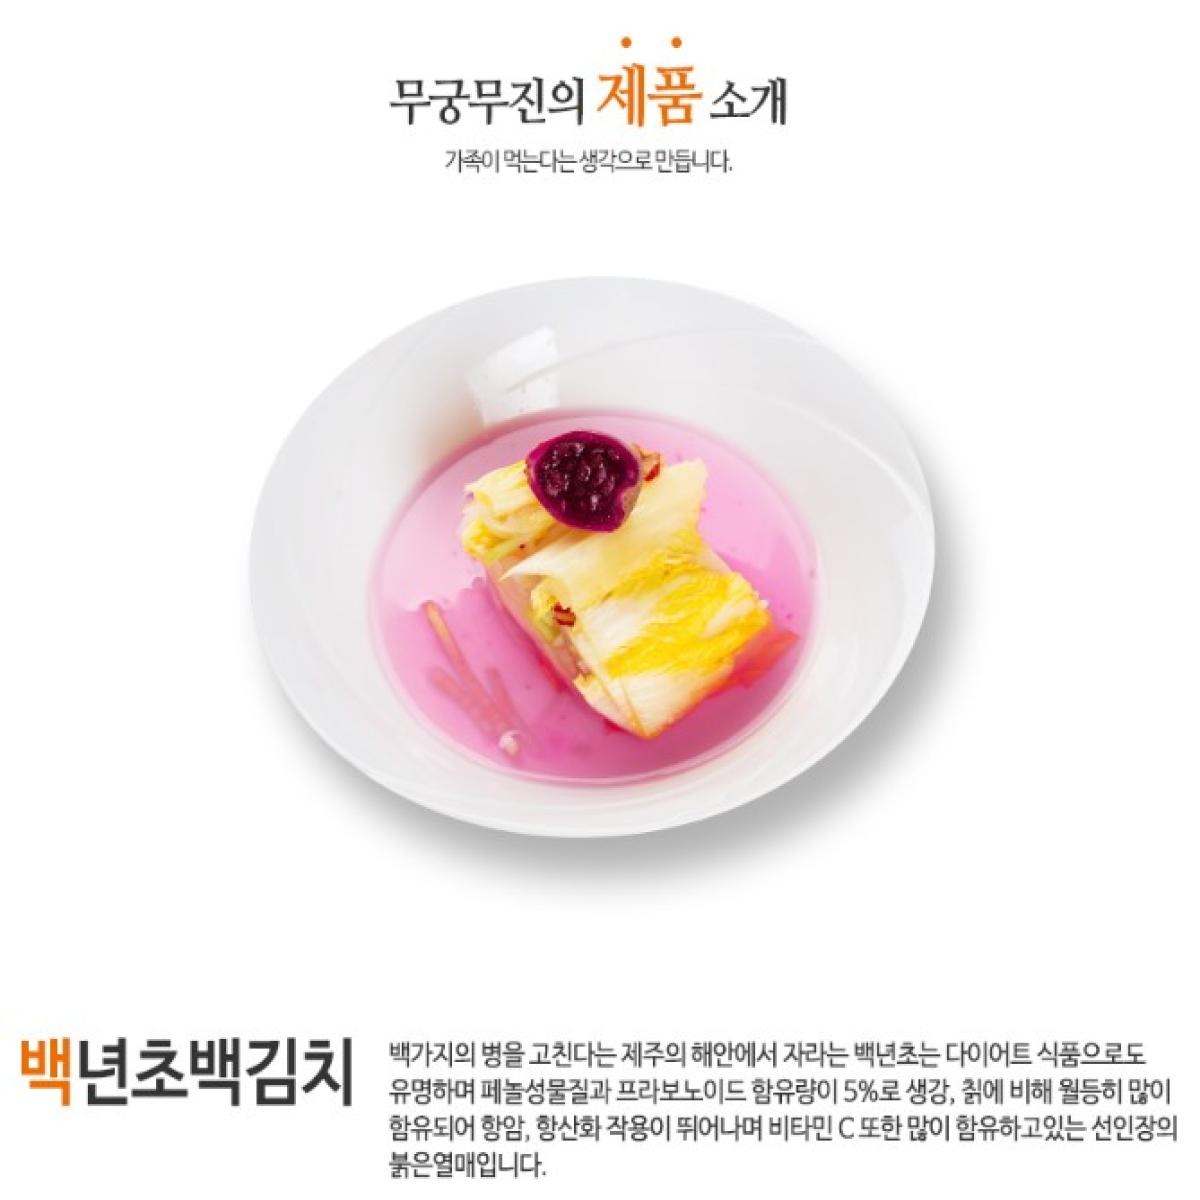 무궁무진 백년초백김치 김치캔650g